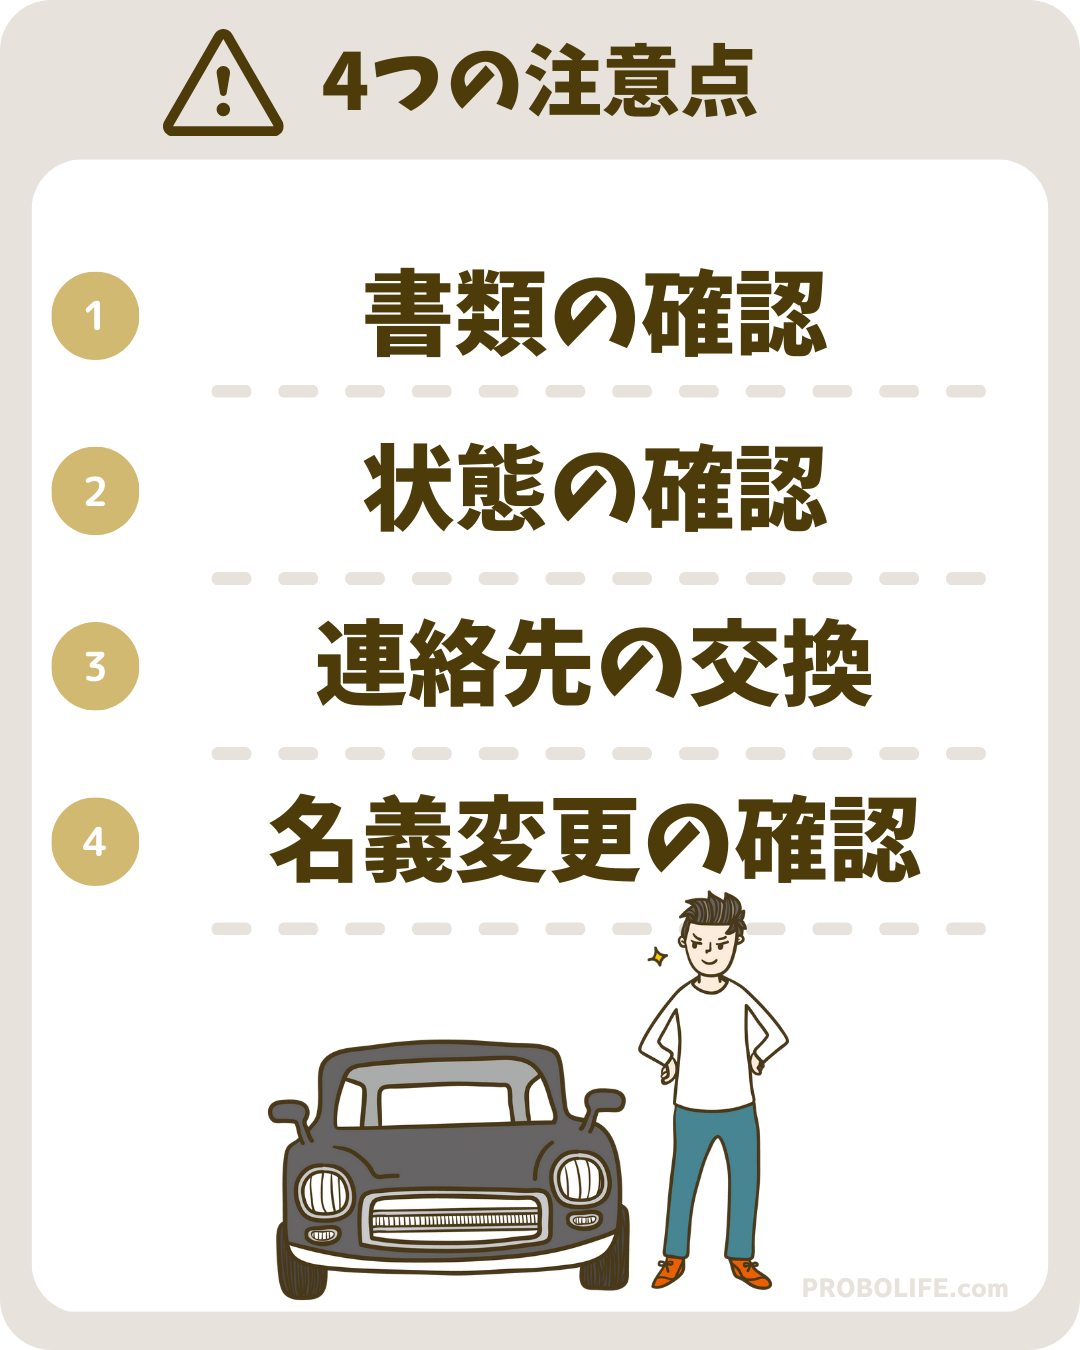 車を引き渡す際の4つの注意点